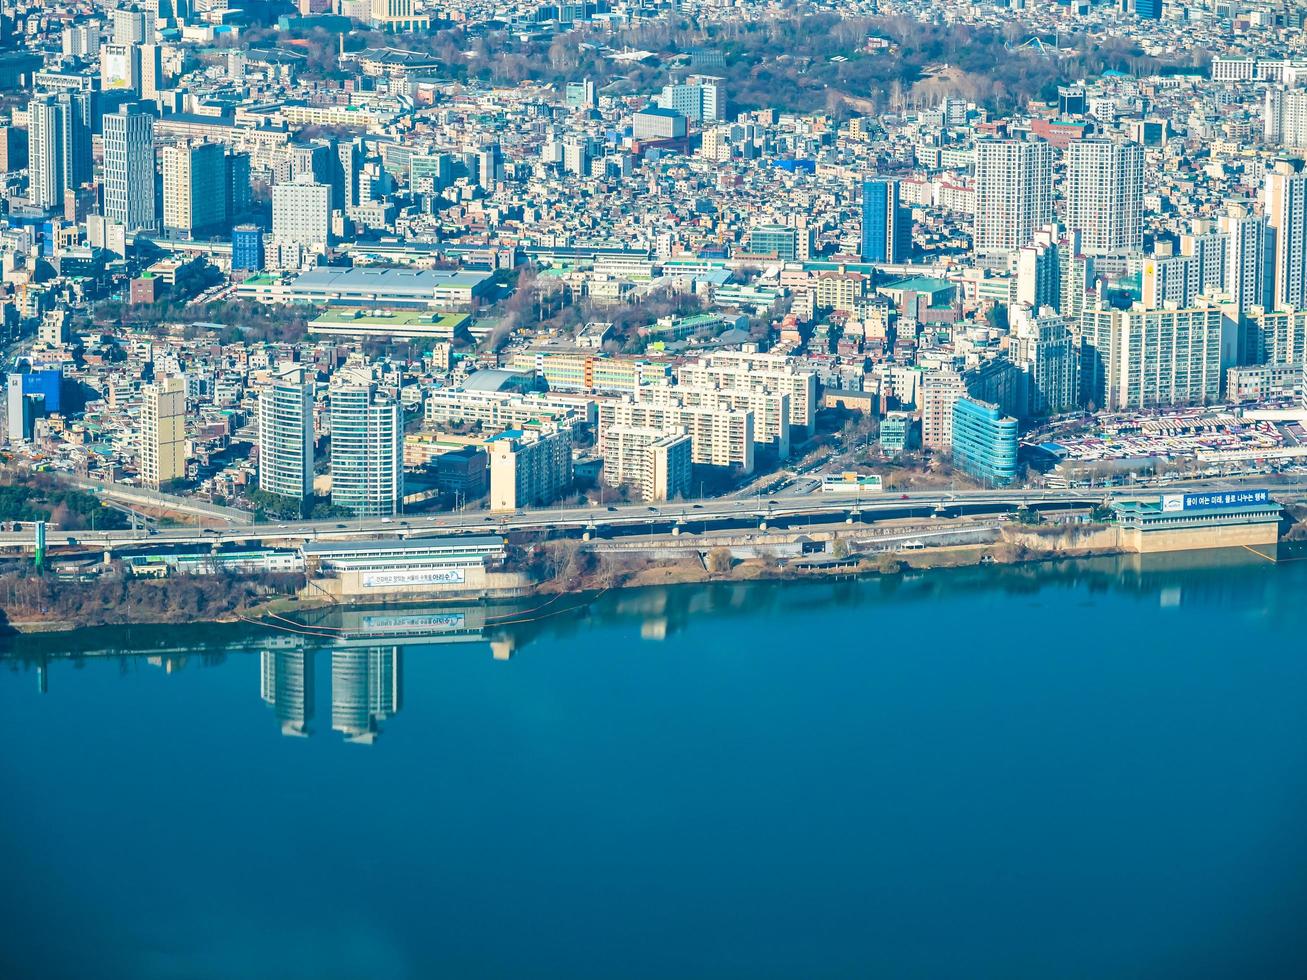 Luftaufnahme der Stadt Seoul, Südkorea foto